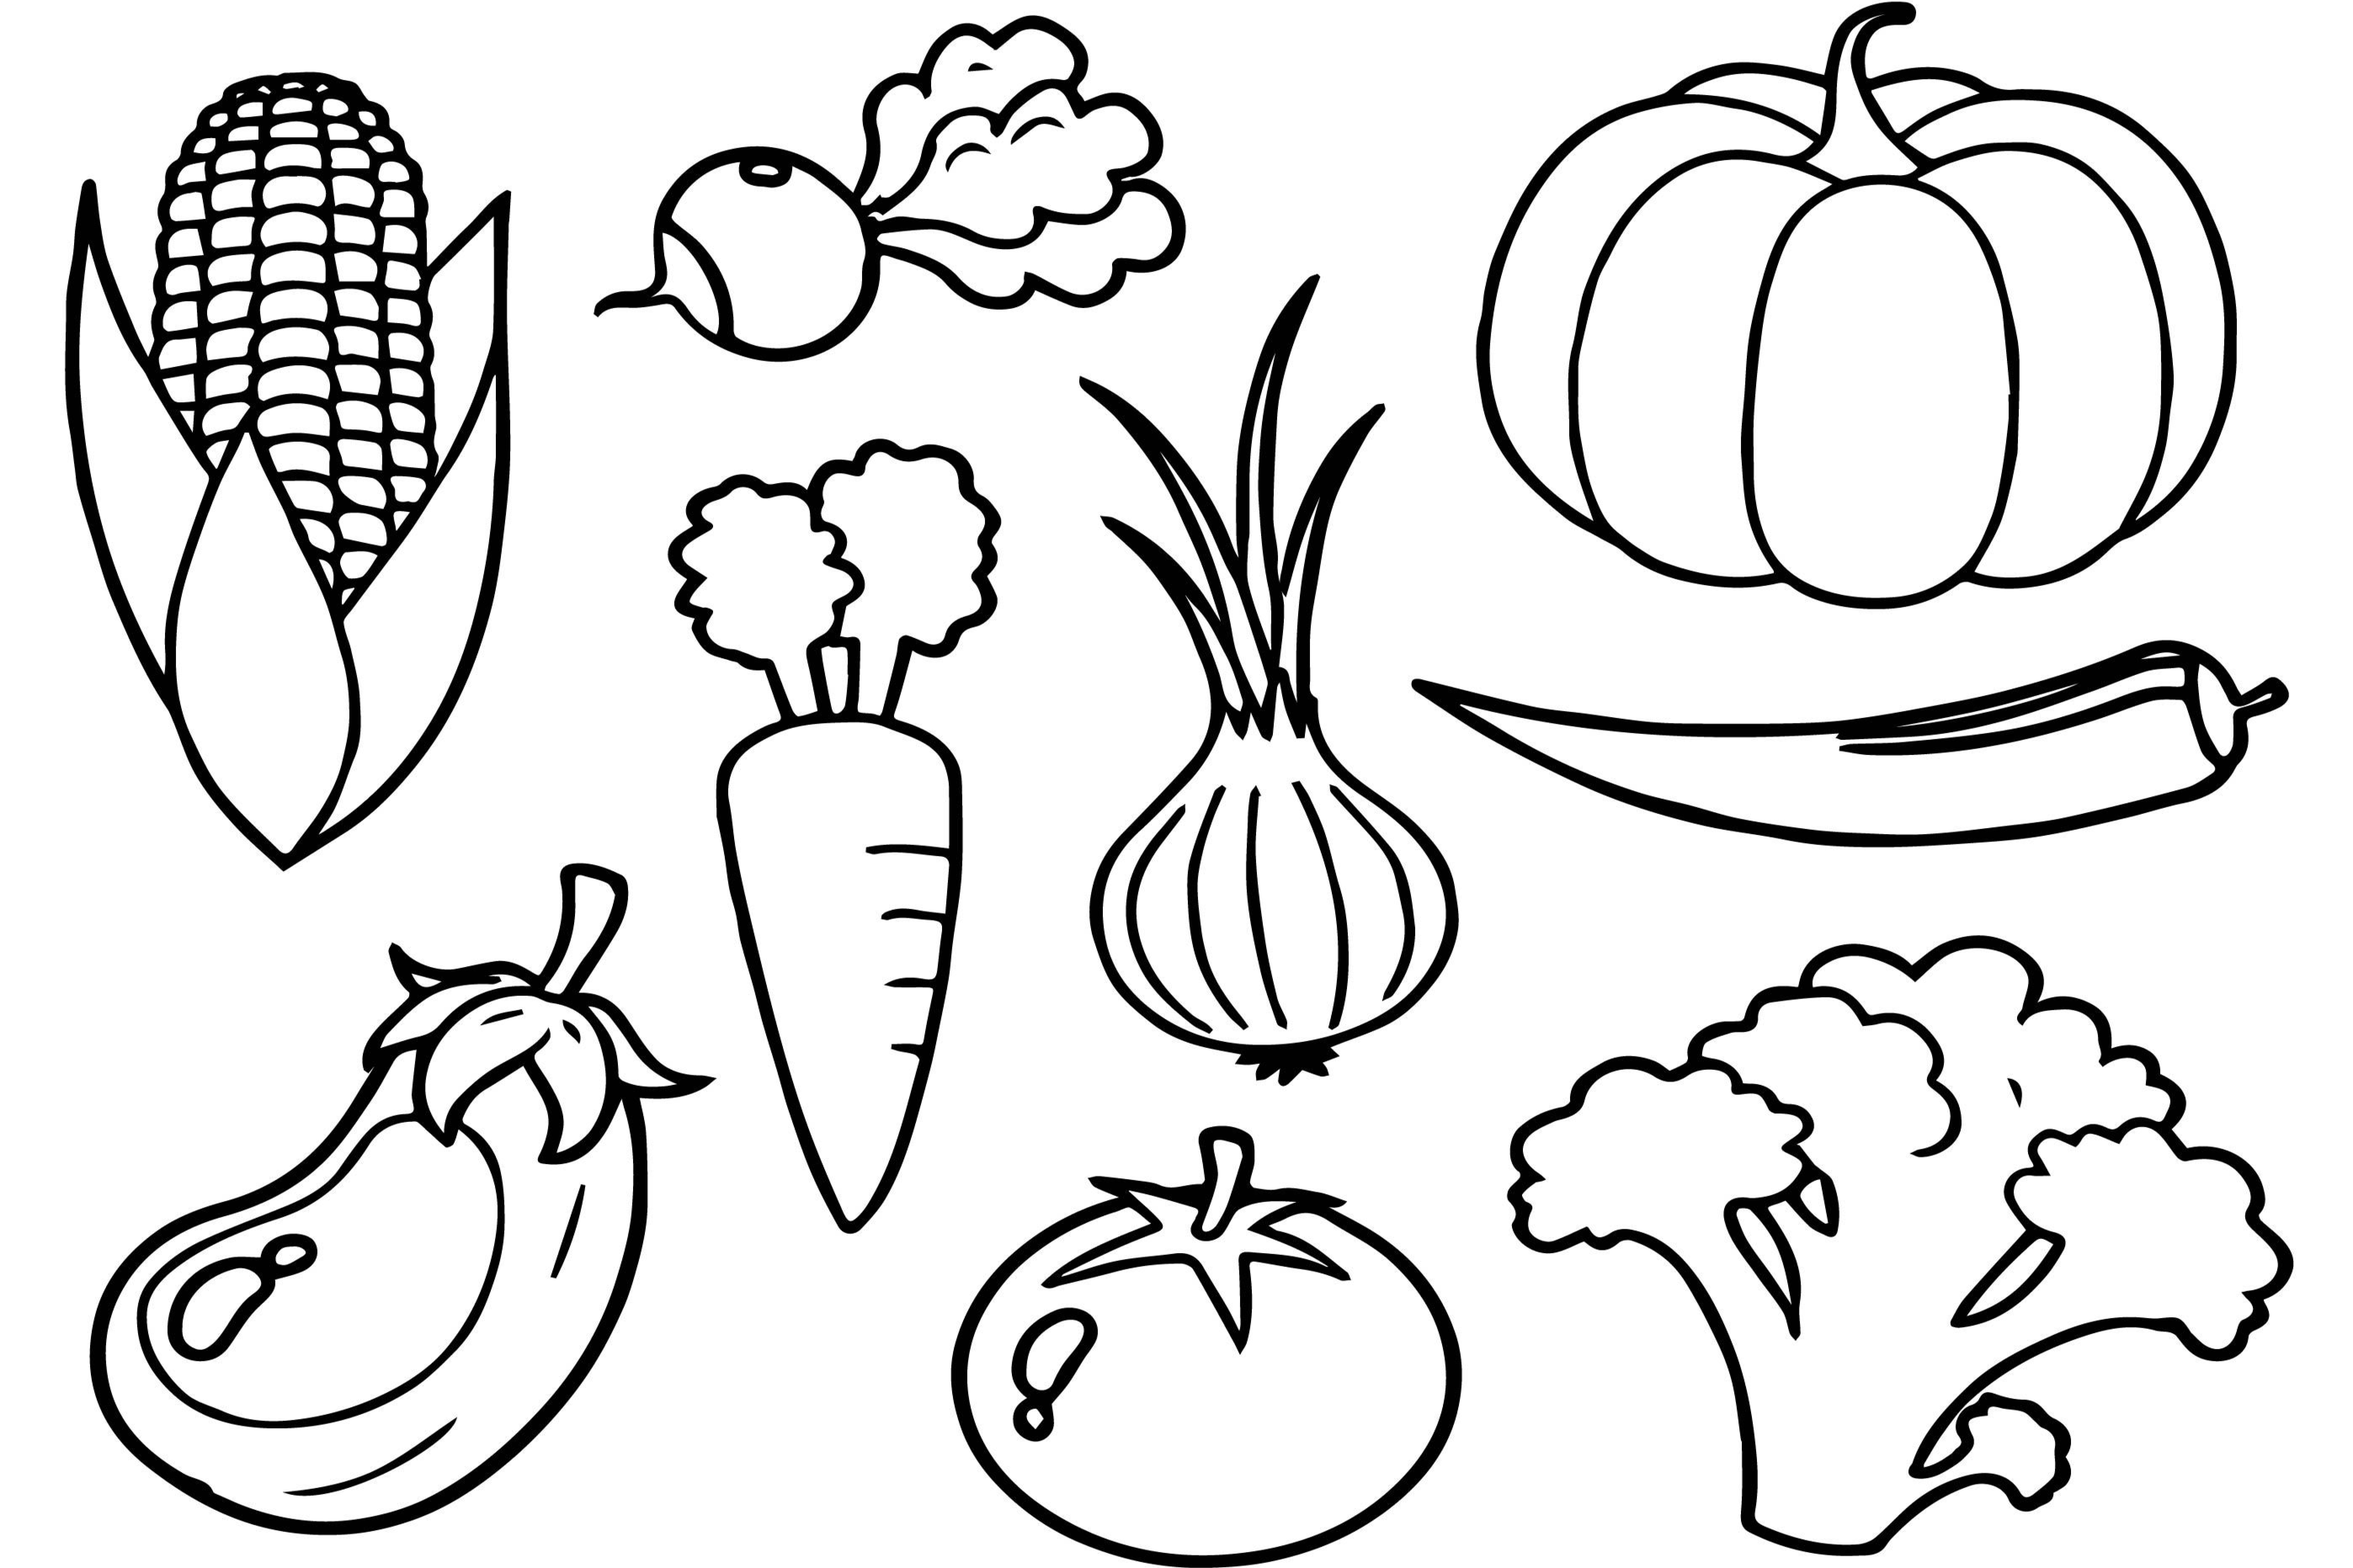 Распечатать раскраски овощи и фрукты для детей